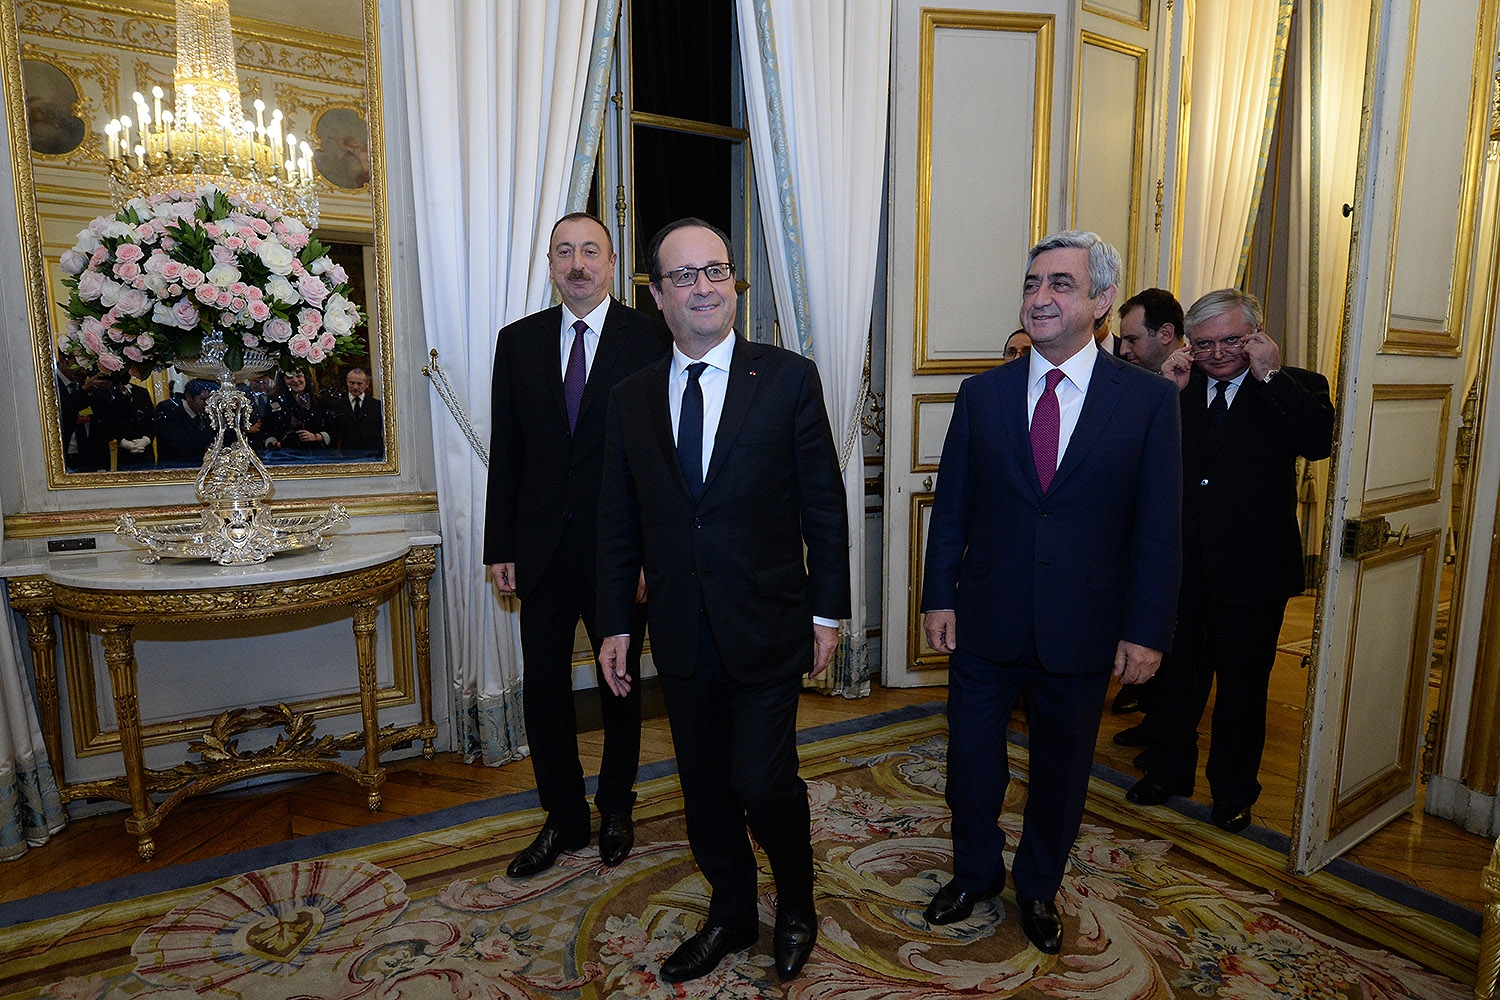 При освещении парижской встречи президентов азербайджанские СМИ вынуждены были 
пользоваться армянскими источниками: minval.az